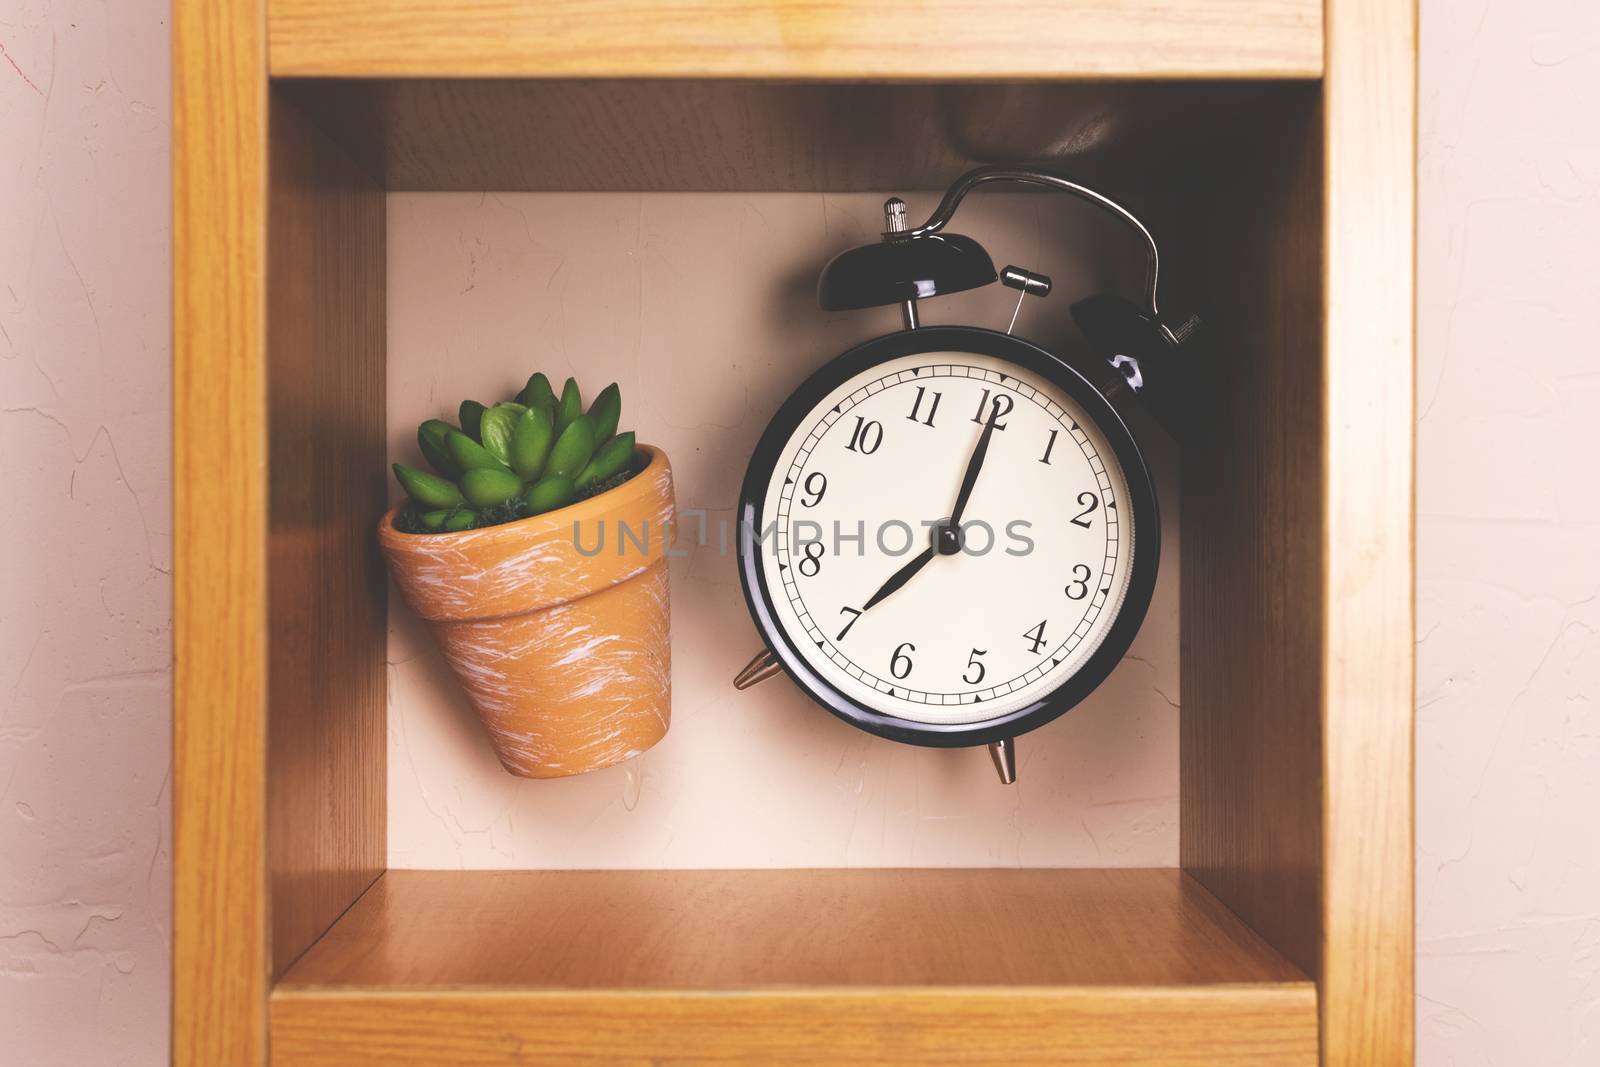 Flower alarm clock jumping on a wooden shelf